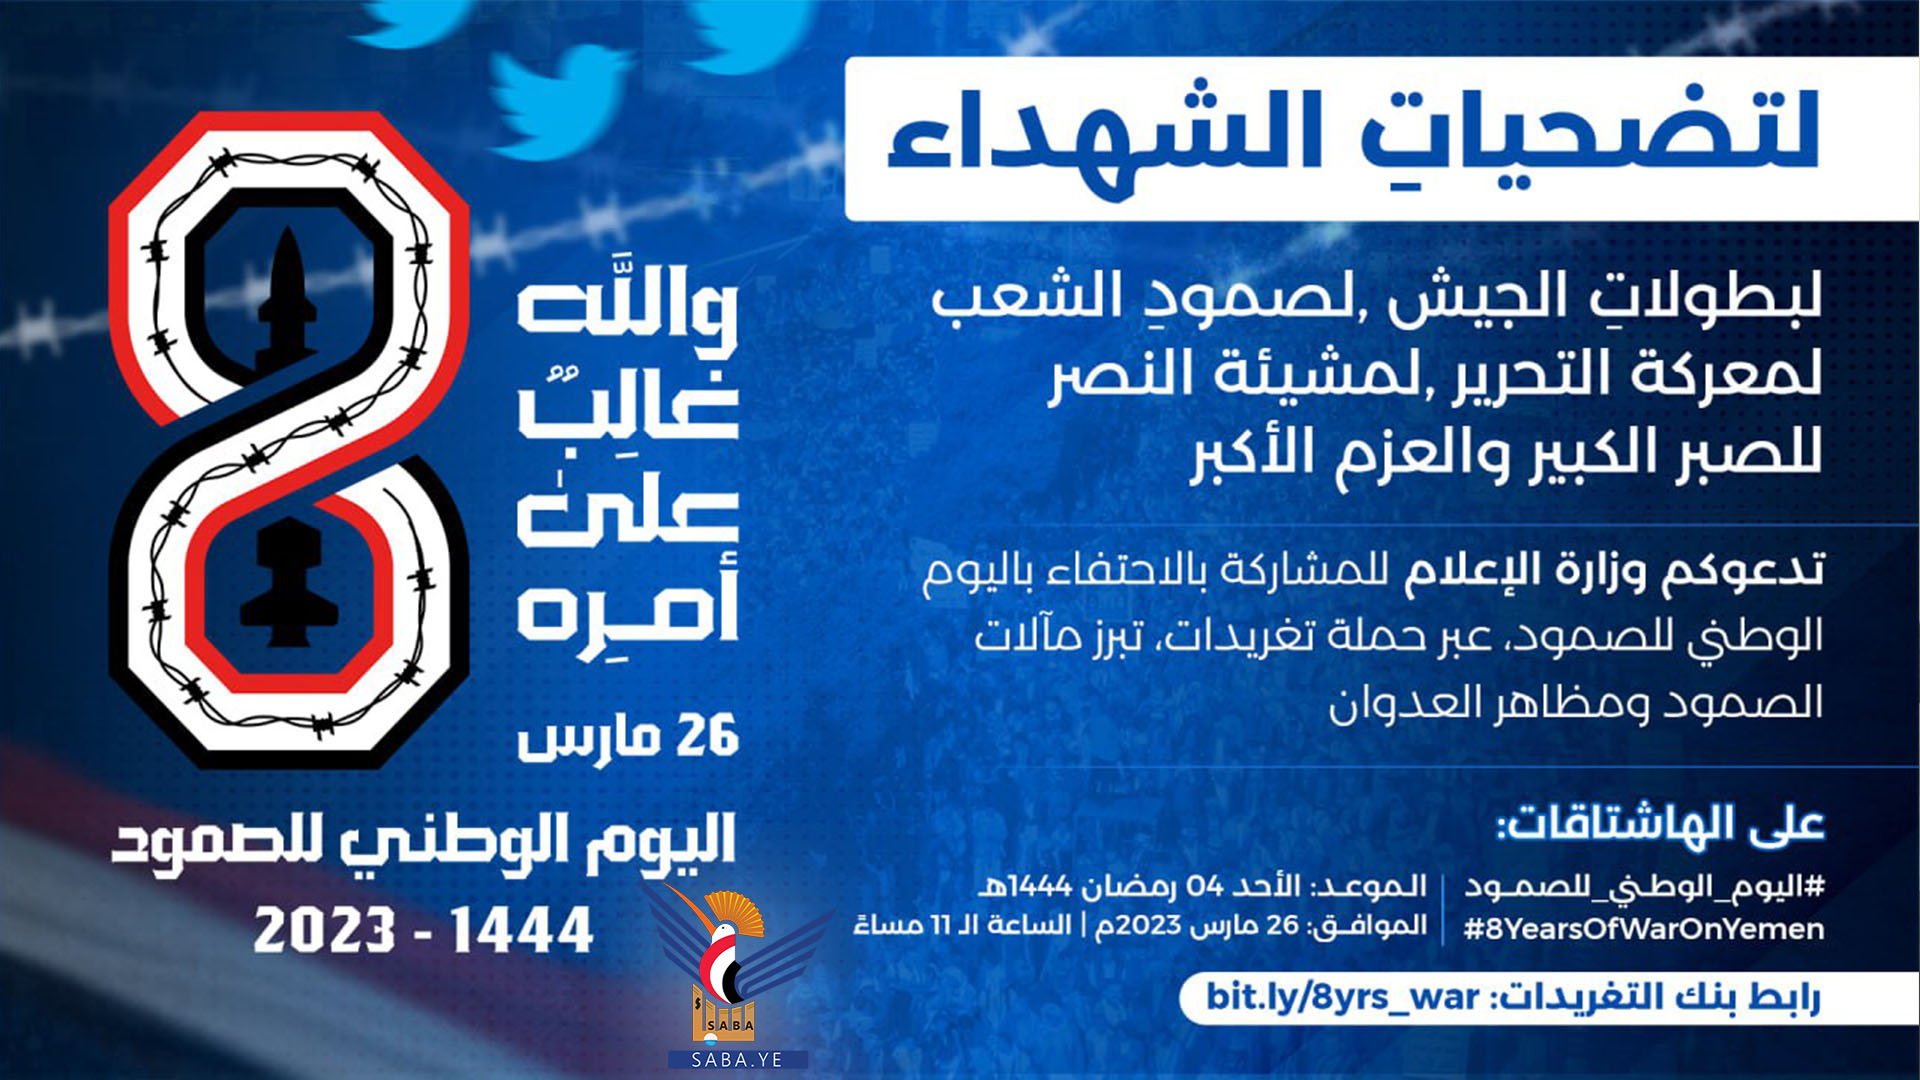 وزارة الإعلام تدعو للمشاركة في حملة تغريدات مرور ثمانية أعوام من الصمود